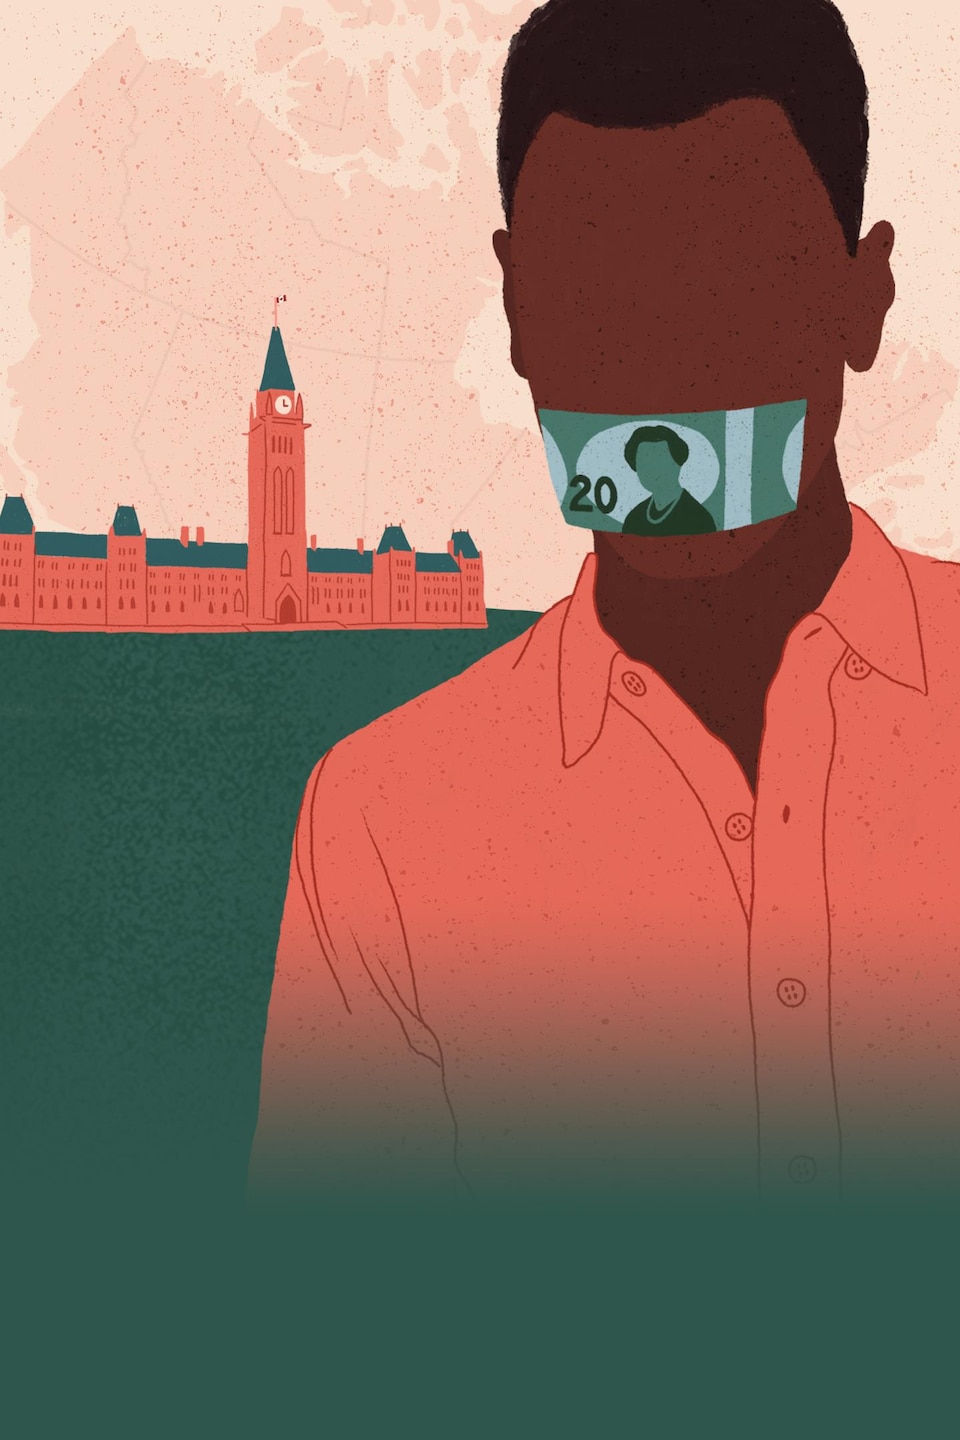 Infographie d'un homme bâillonné par un billet canadien de 20 $ devantle Parlement.